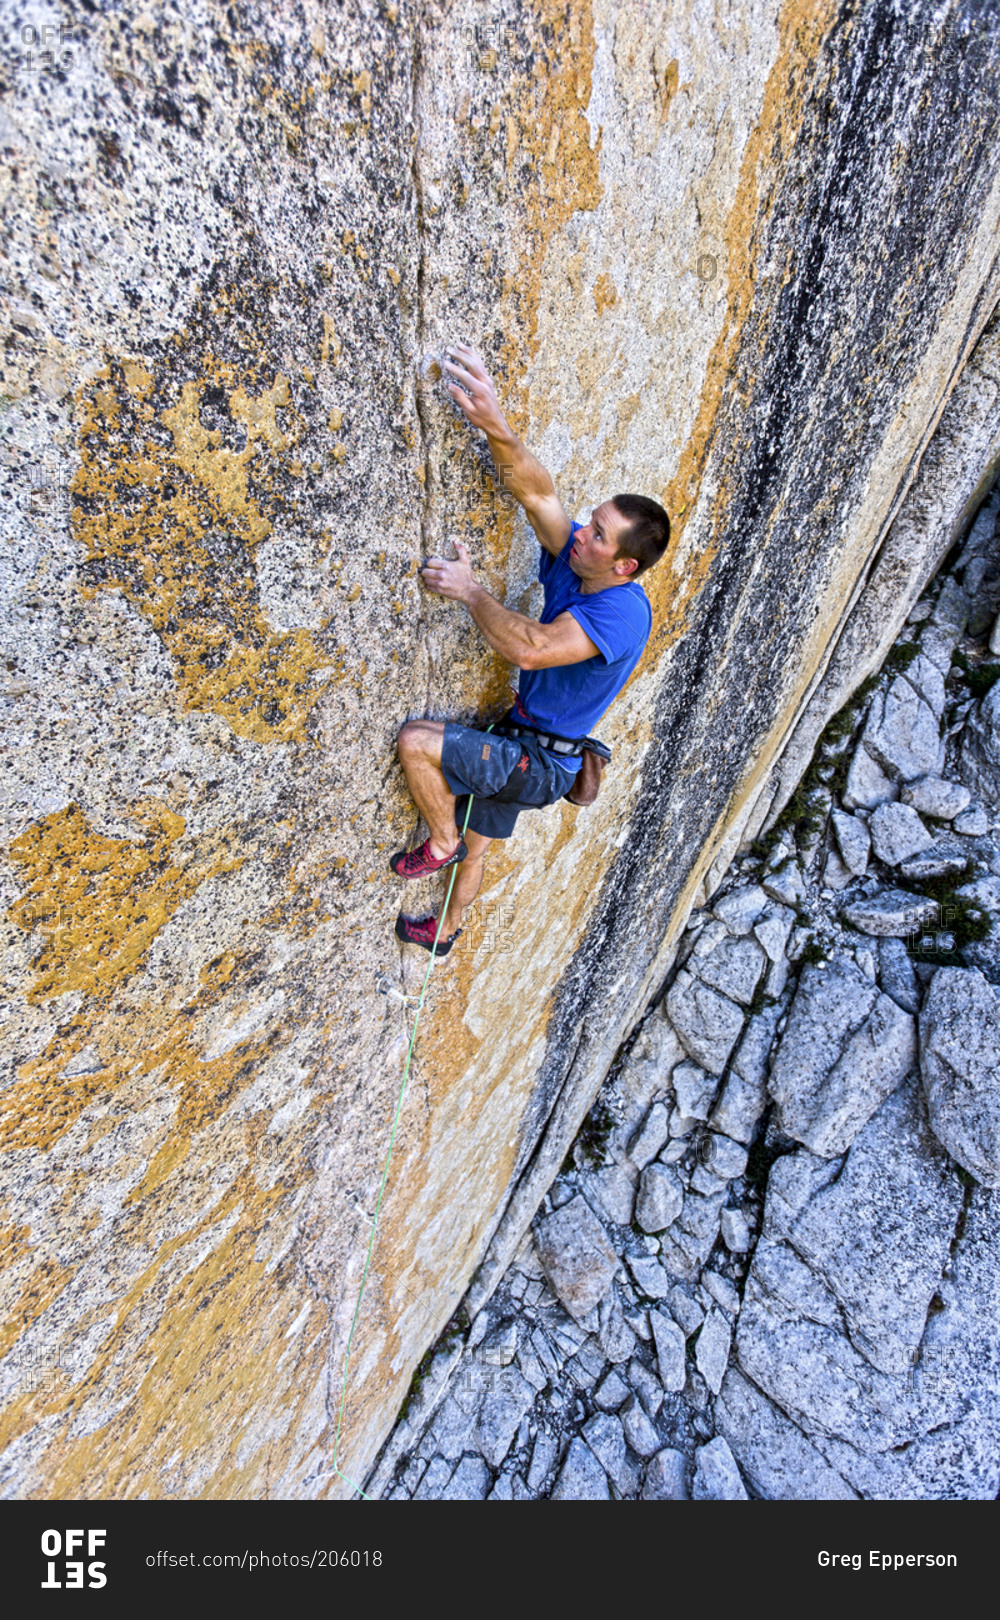 A rock climber heads up a vertical rock wall